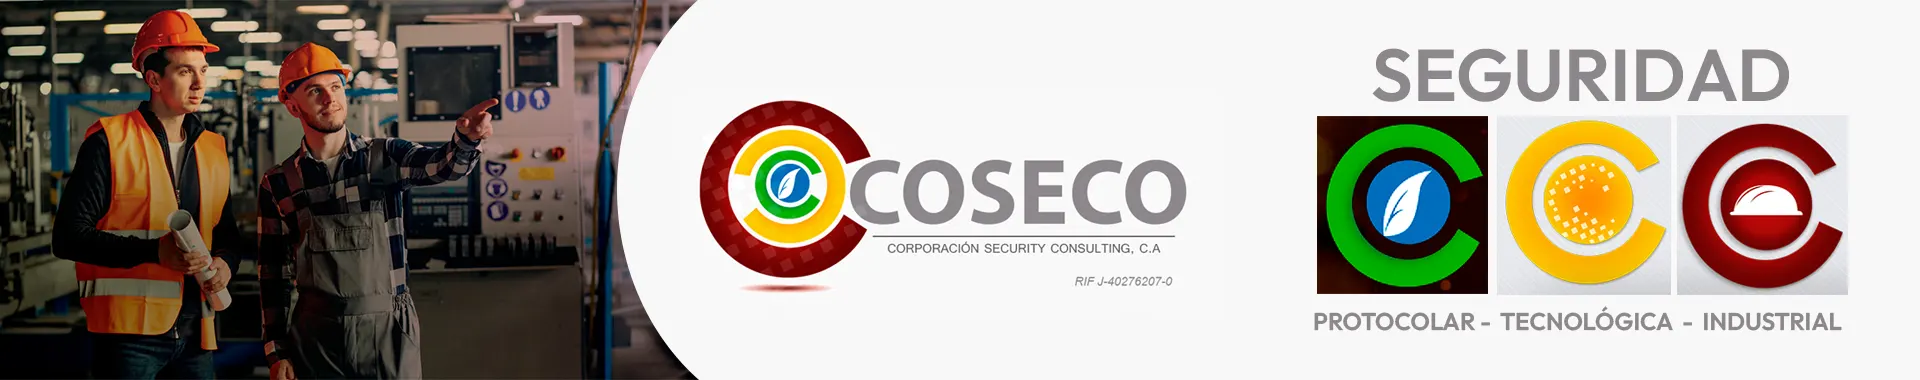 Imagen 1 del perfil de Coseco Corporación Security Consulting